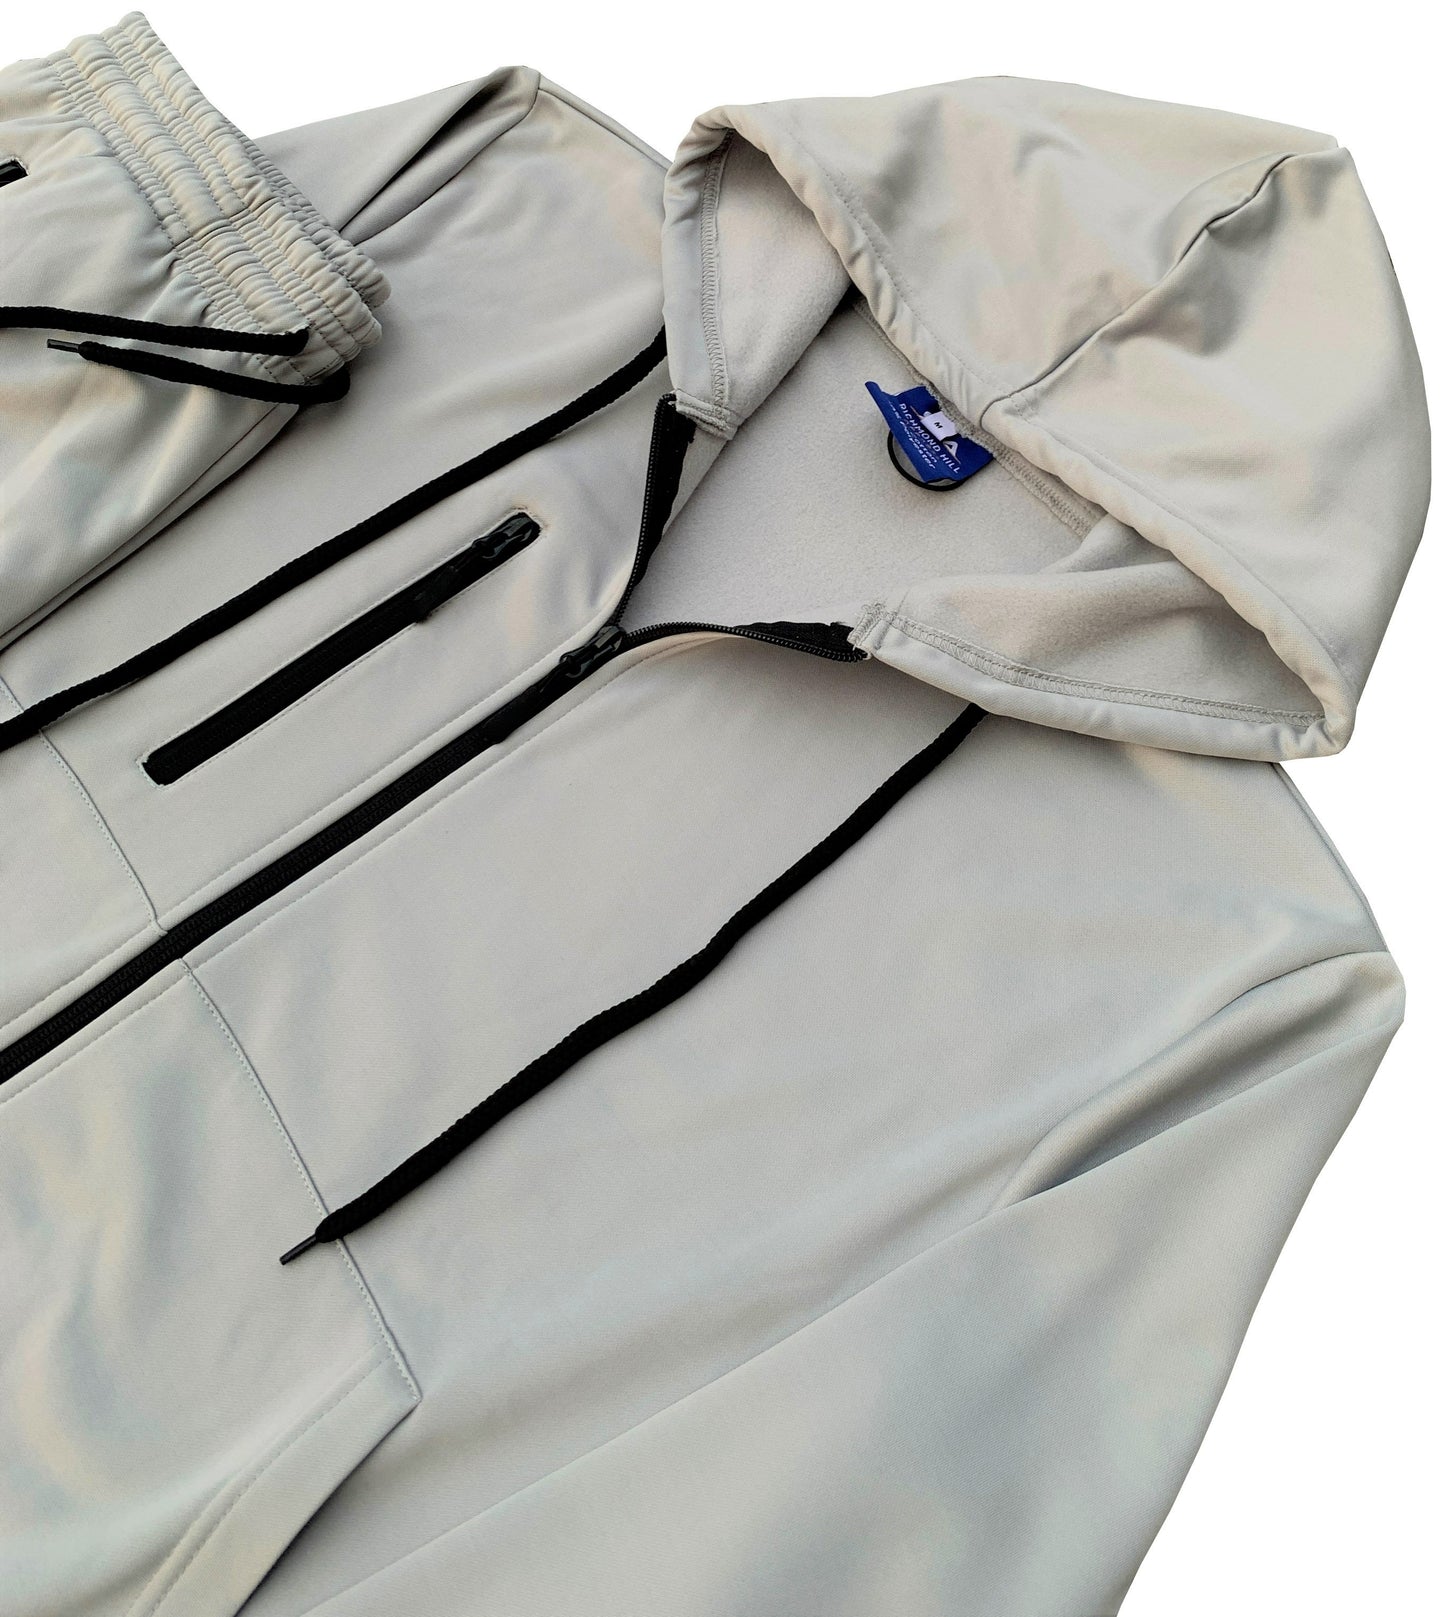 Men’s Warm Winter Tech Fleece Sweat Jacket Sweatpants Jogger Outfit